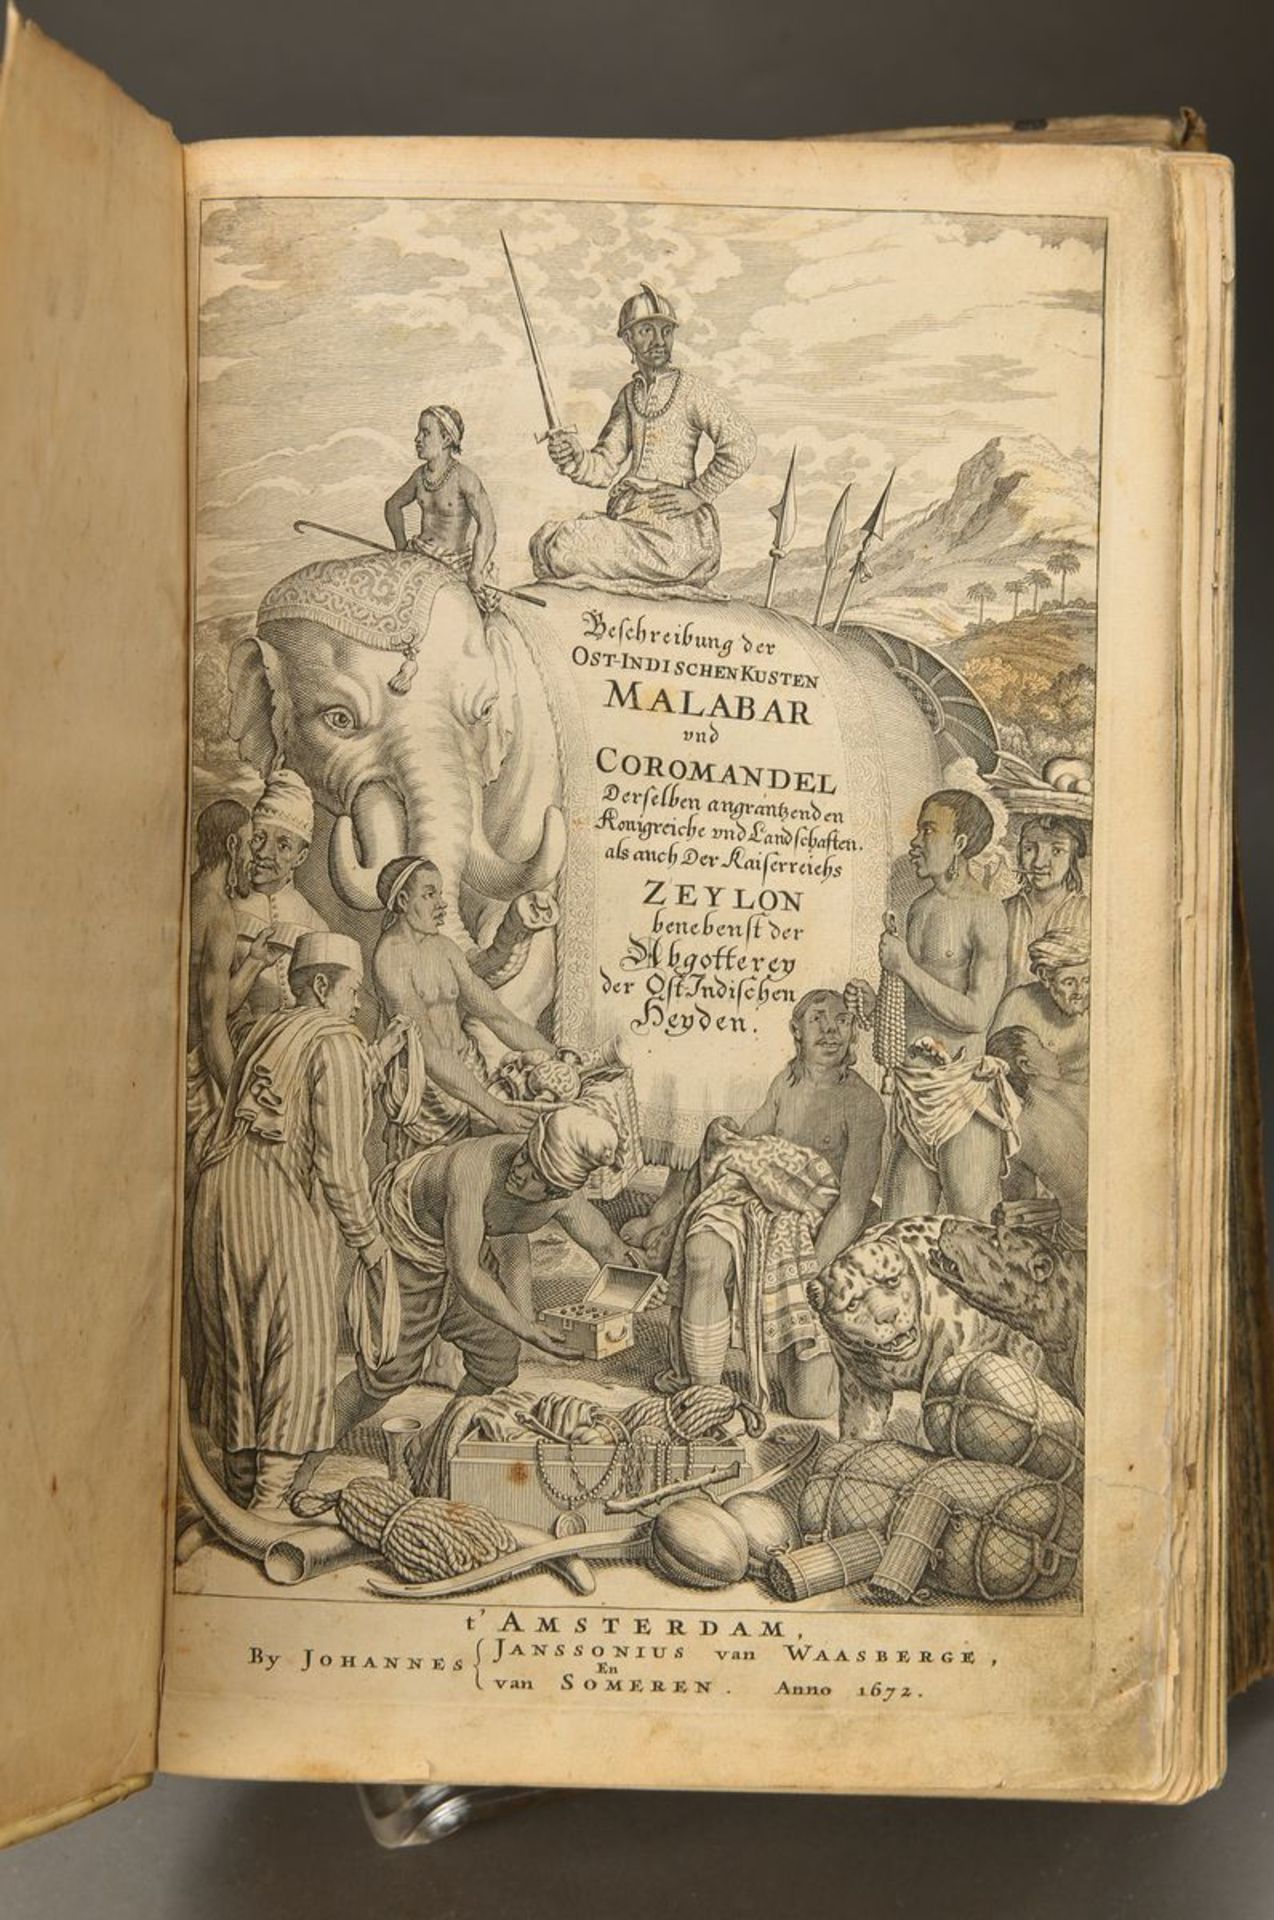 Philippus Baldaeus, Wahrhaftige ausführliche Beschreibung der brühmten Ost-Indischen KüstenMalabar